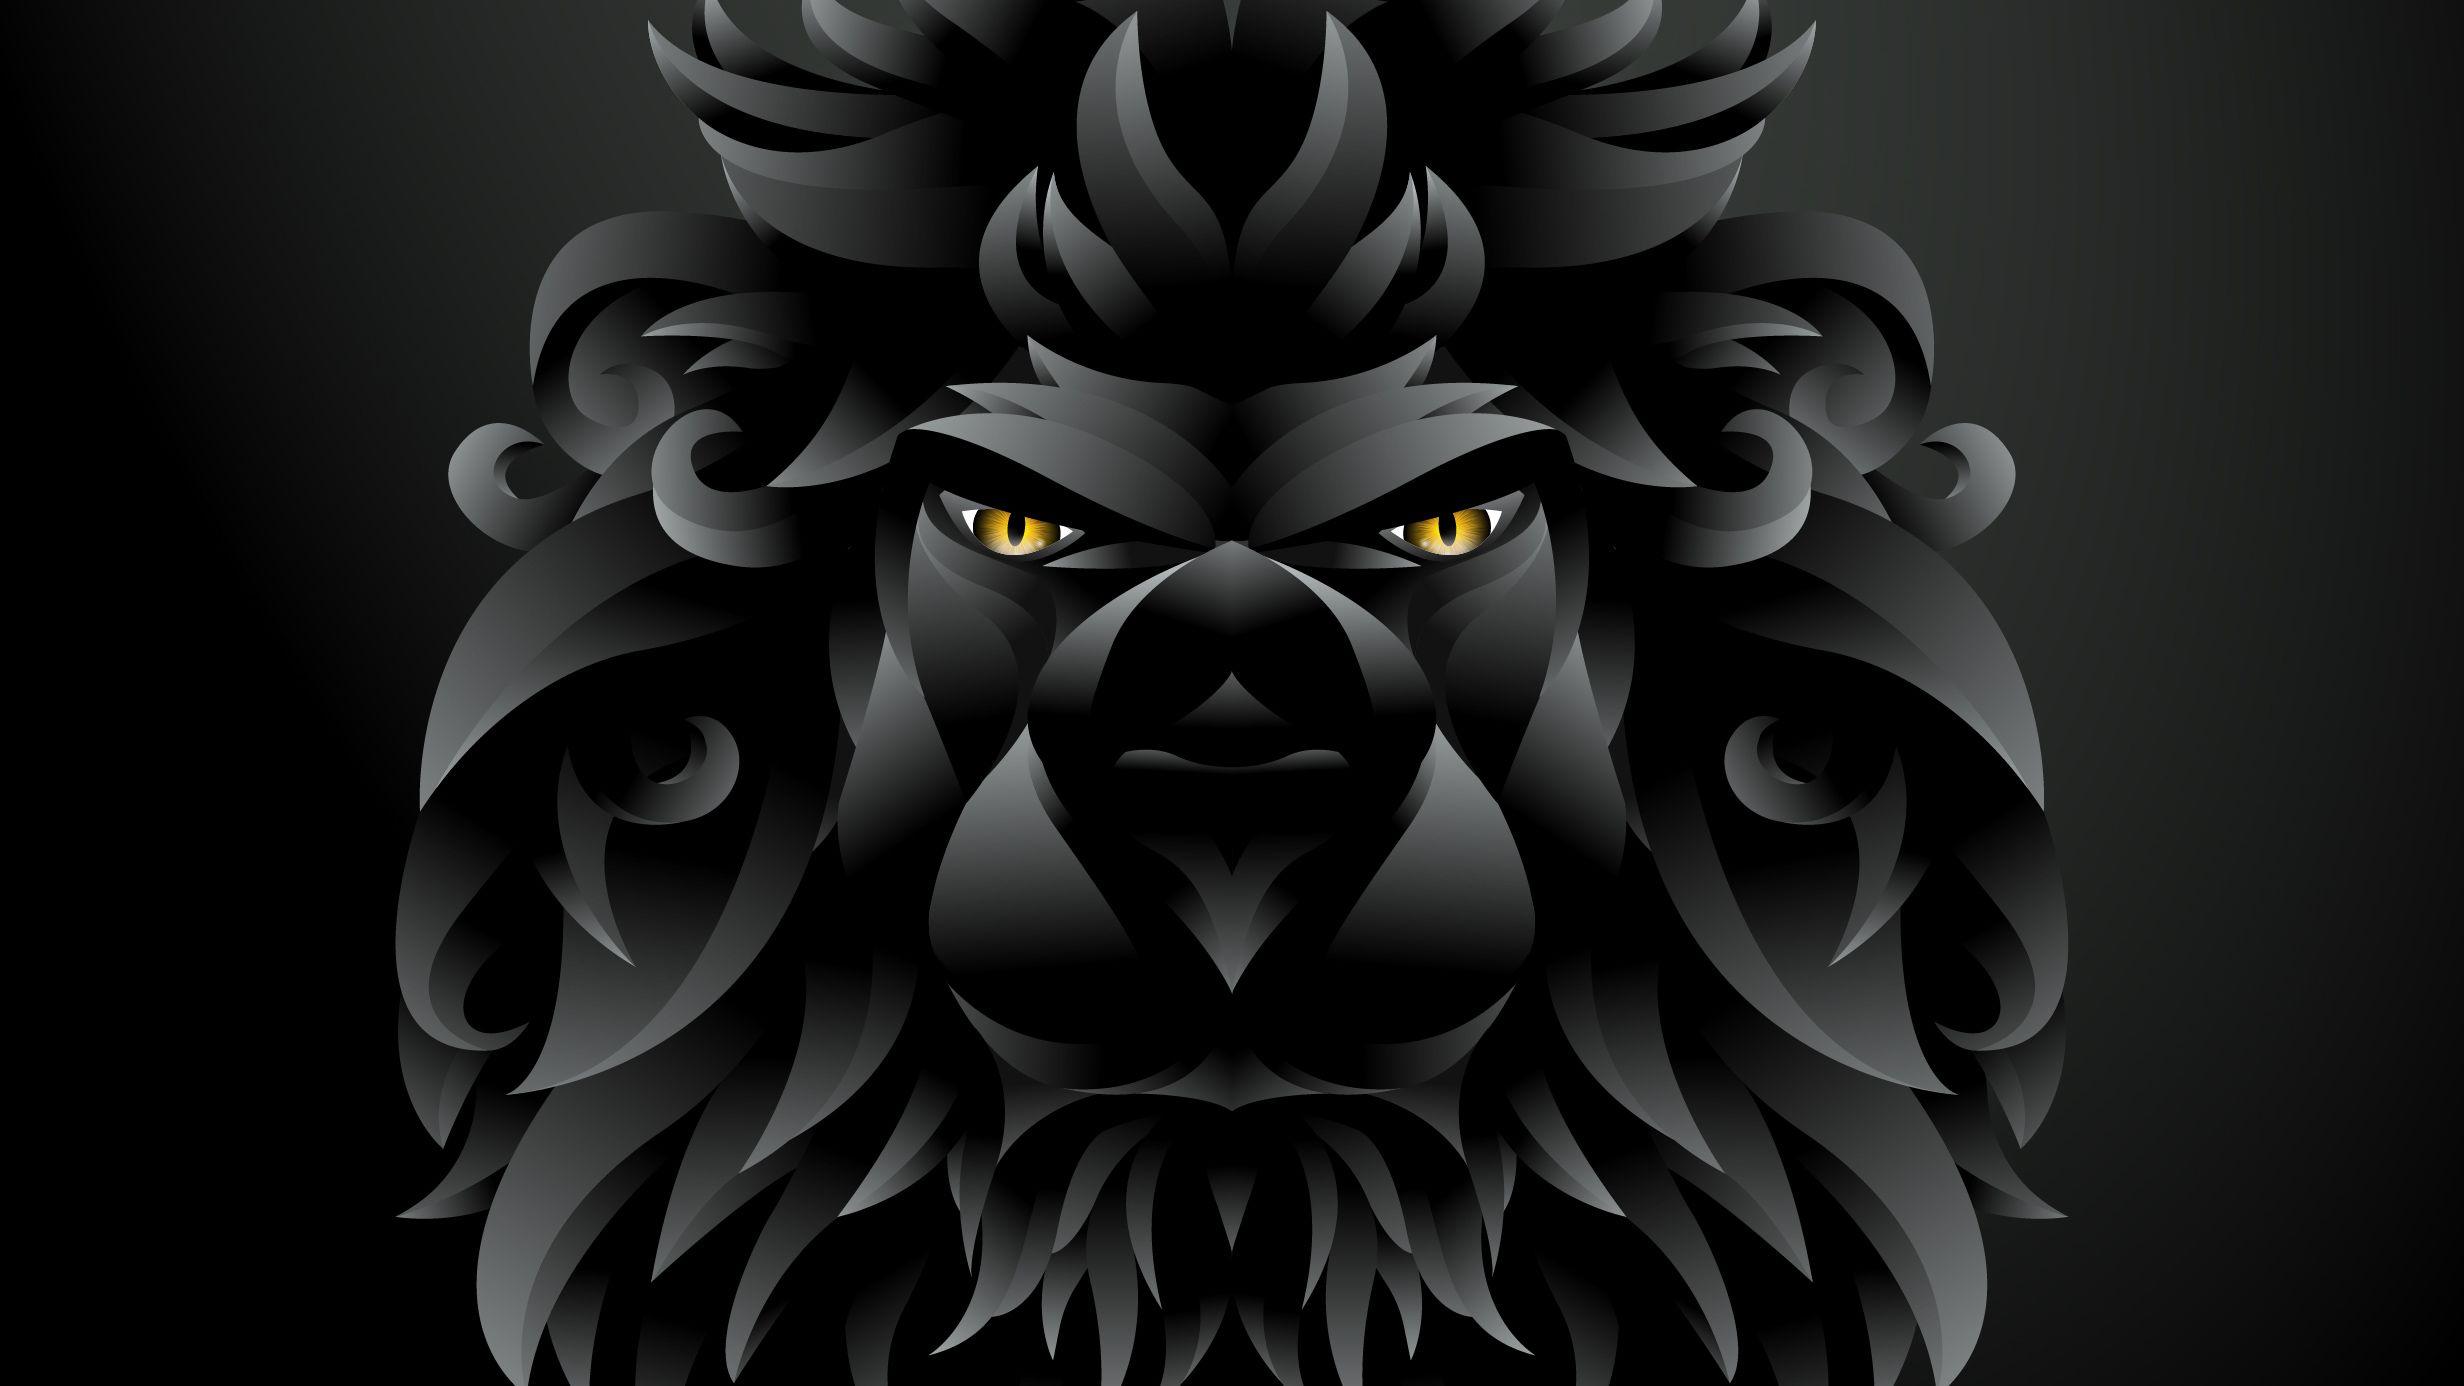 2464x1386 Hình minh họa sư tử đen tối, Nghệ sĩ HD, Hình nền 4k, Hình ảnh